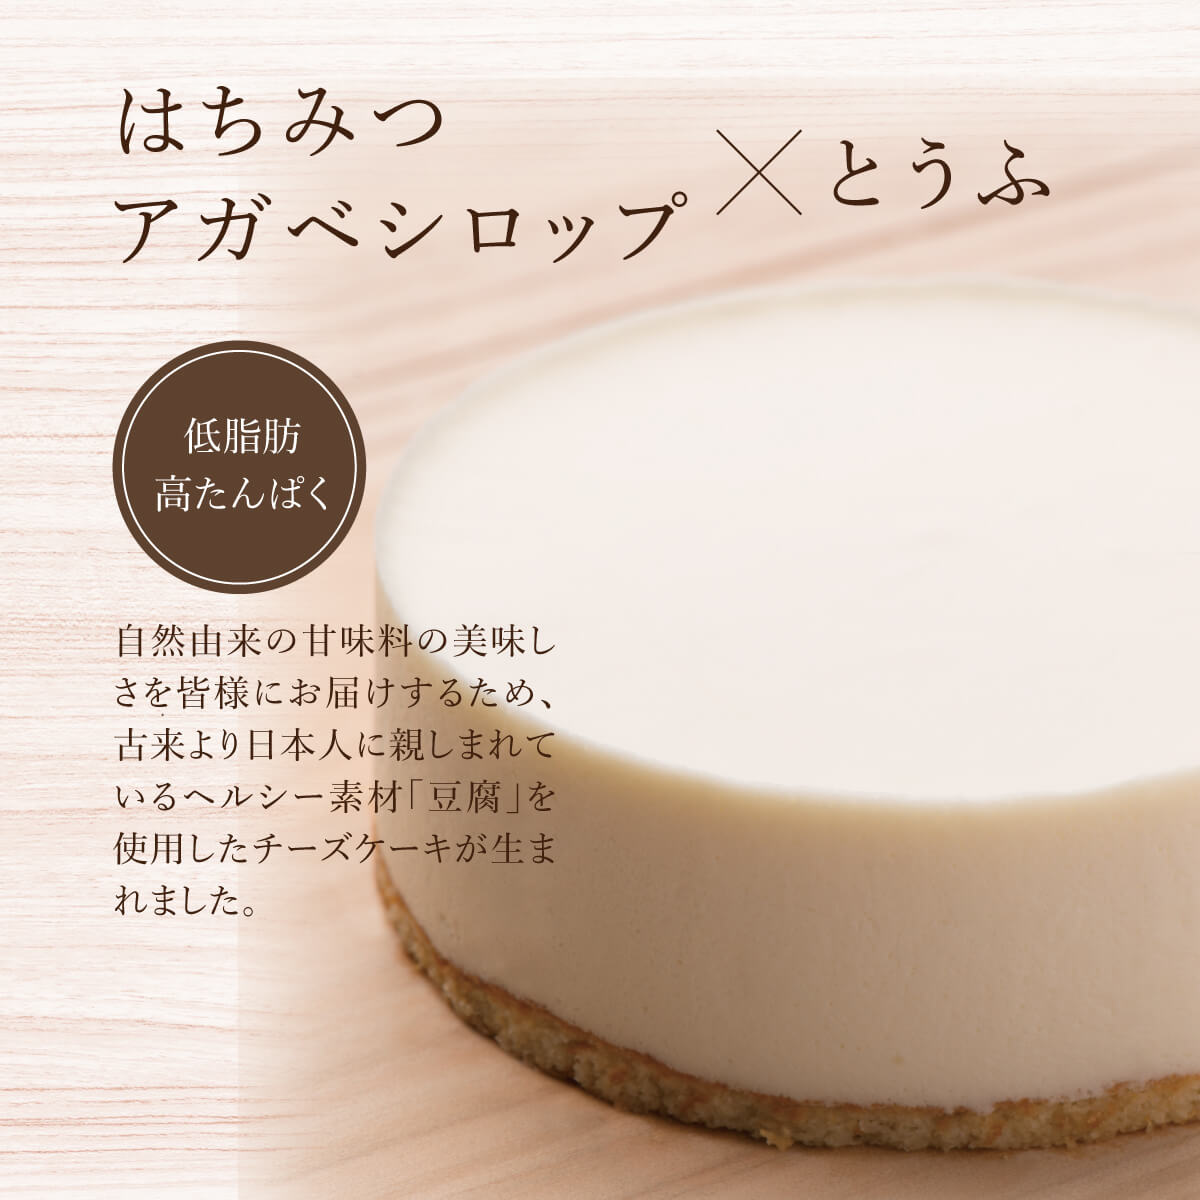 はちみつ・アガベシロップ×とうふ。低脂肪高たんぱく。自然由来の甘味料の美味しさを皆様にお届けするため、古来より日本人に親しまれているヘルシー素材「豆腐」を使用したチーズケーキが生まれました。